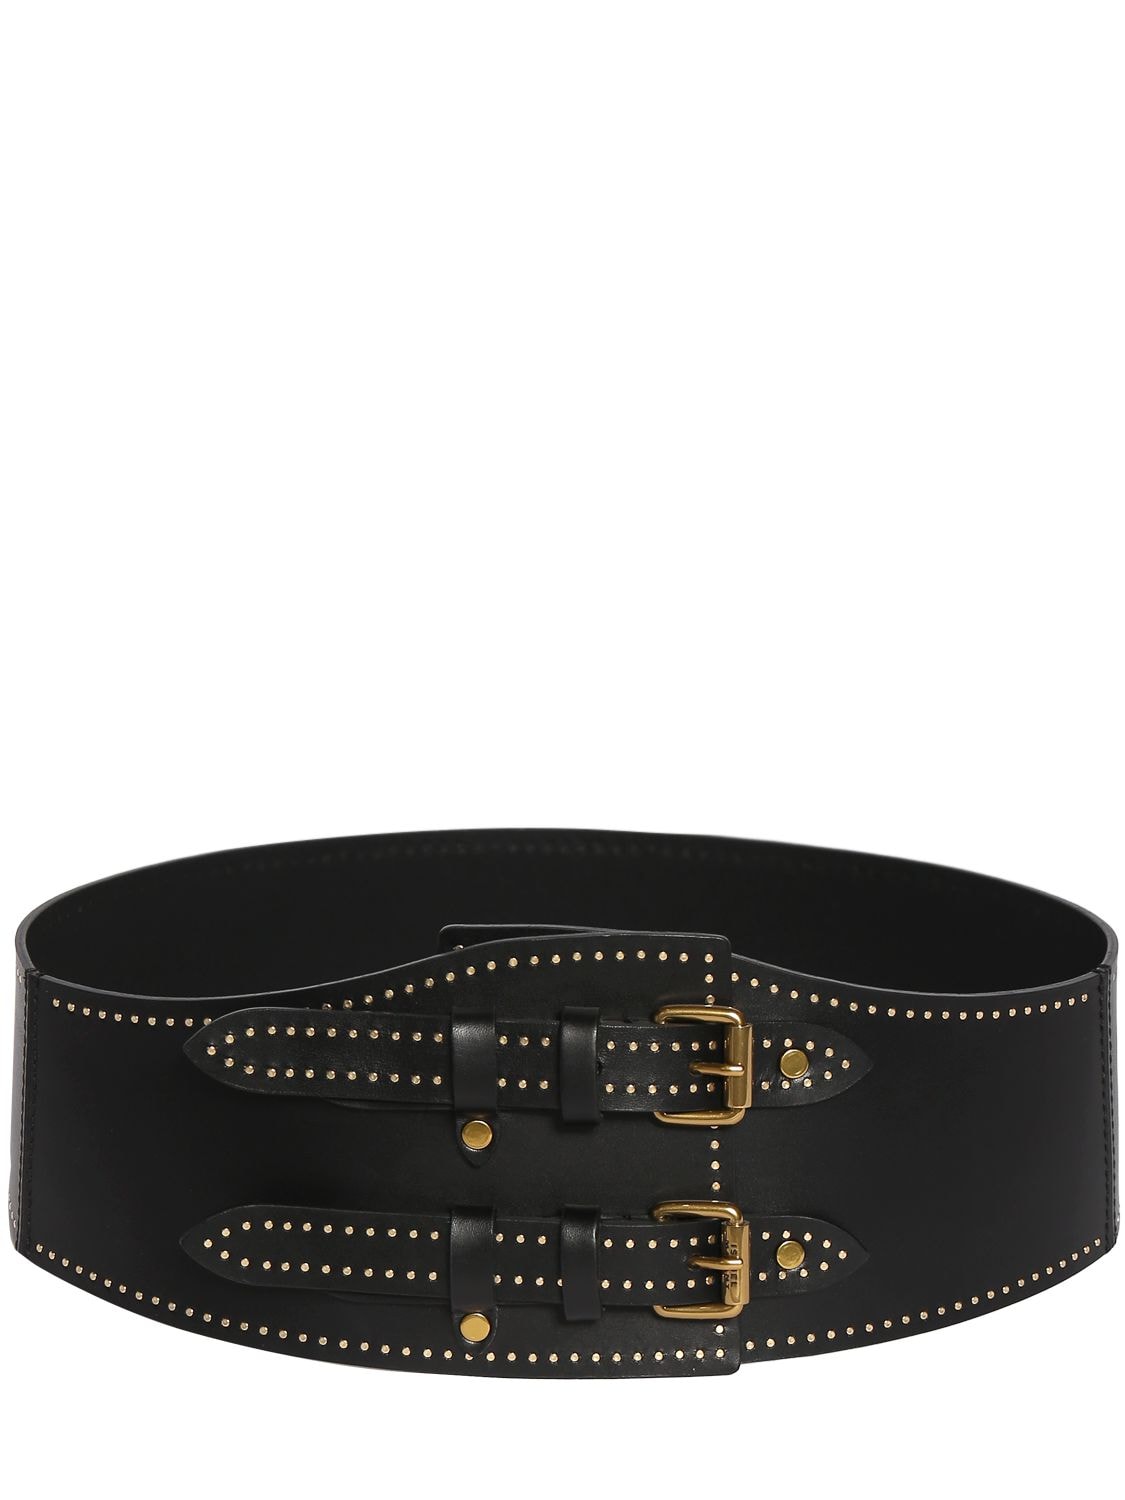 Image of Riccia Leather Belt